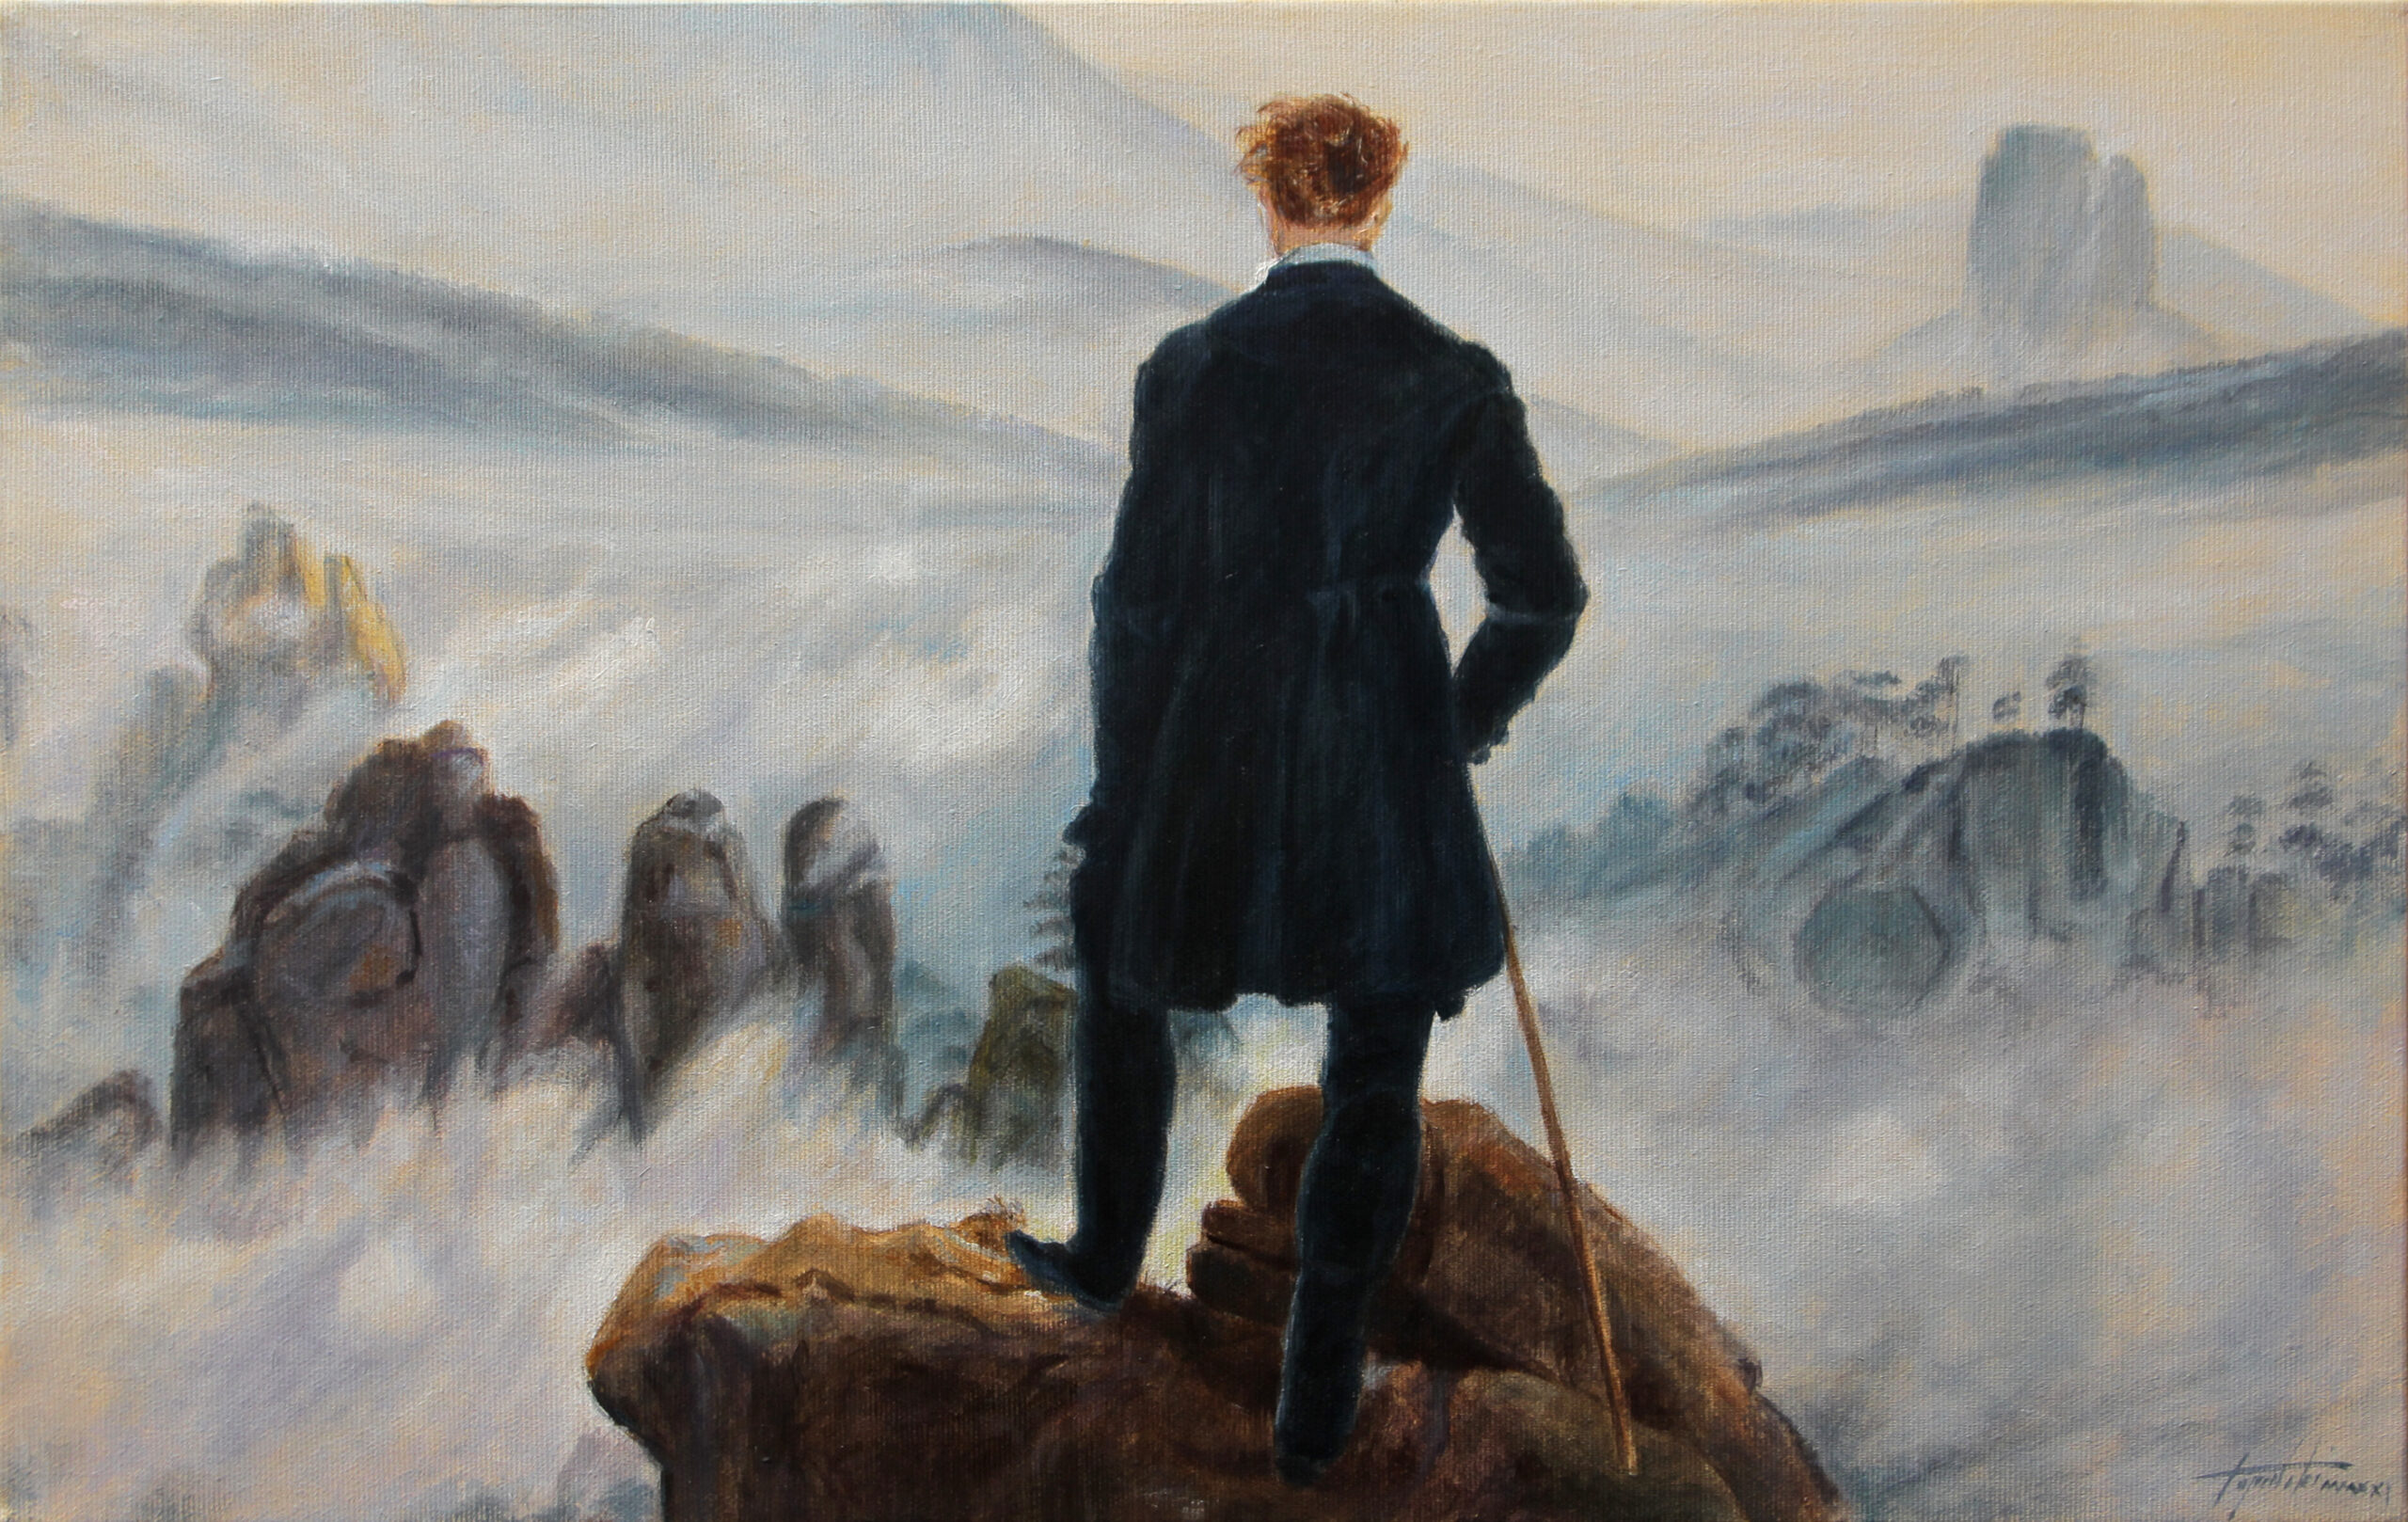 Umetnička slika - Lutalica nad morem magle - po Kasparu Davidu Fridrihu - Ulje na platnu po porudzbini -umetnik Darko Topalski